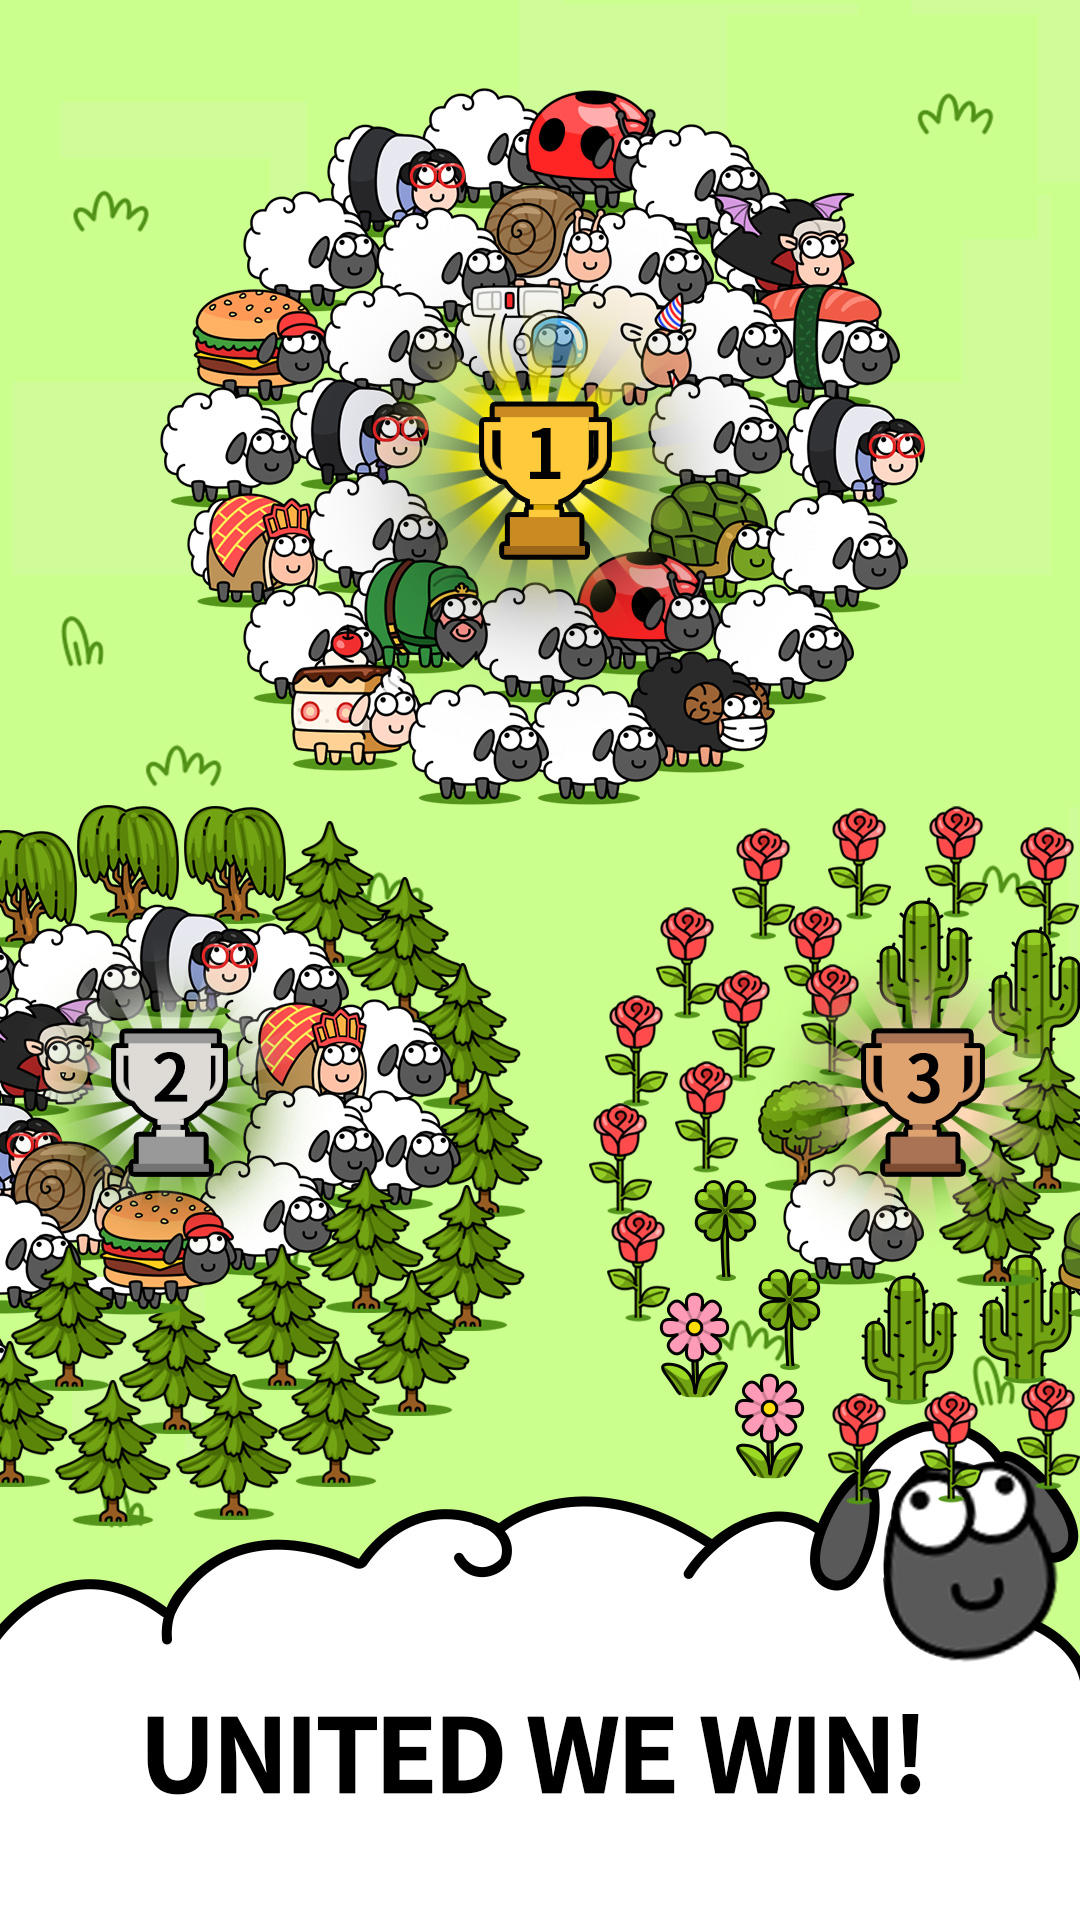 Screenshot of OHHH! Sheep